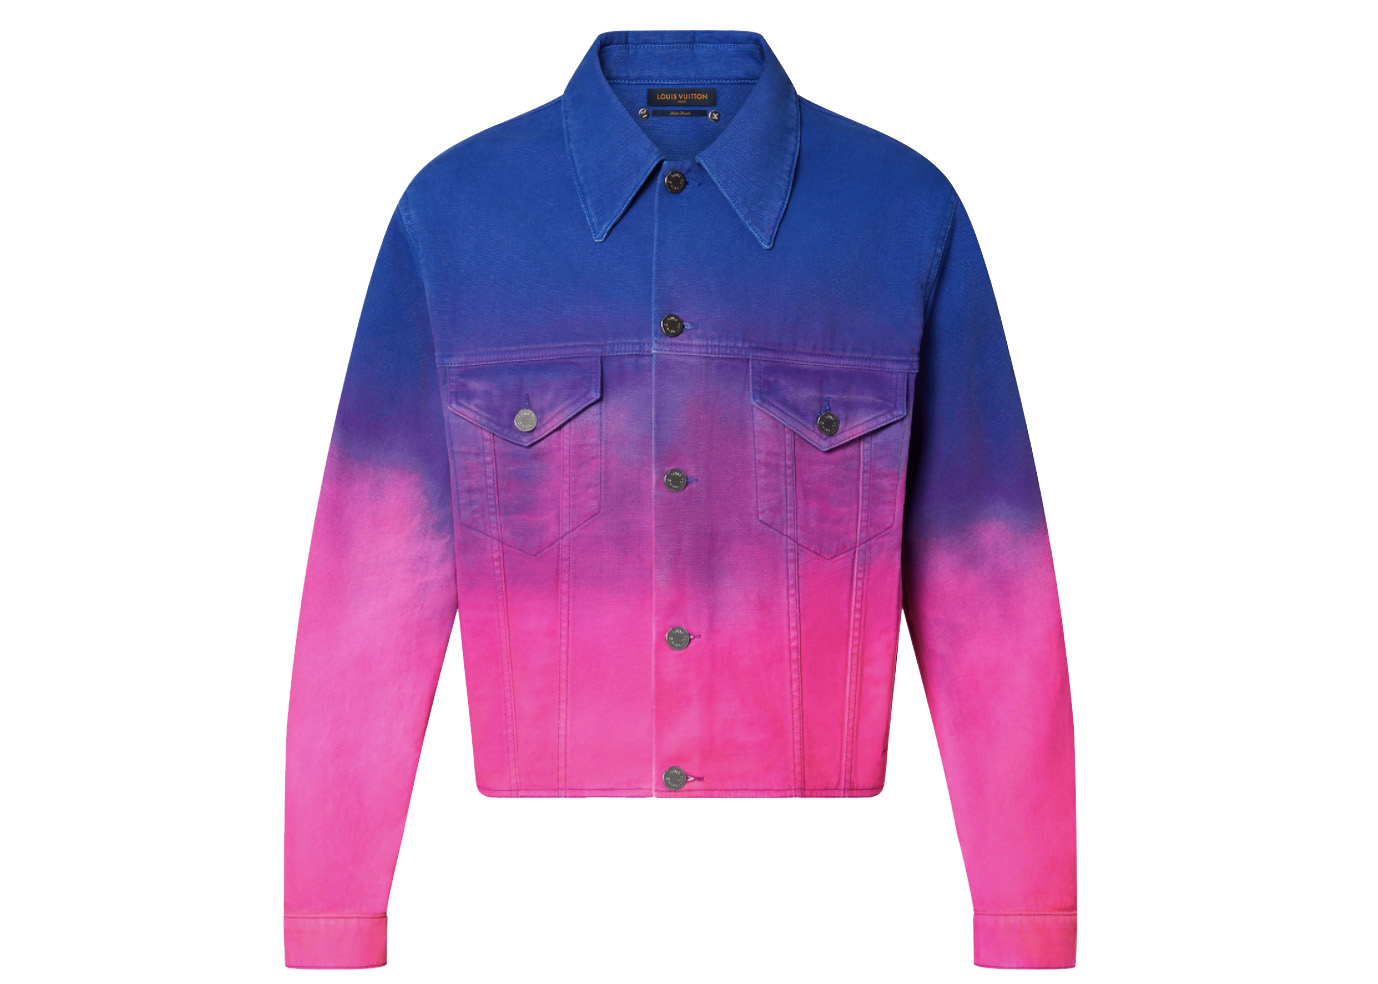 WornOnTV: Heather's Louis Vuitton denim jacket on Selling Sunset